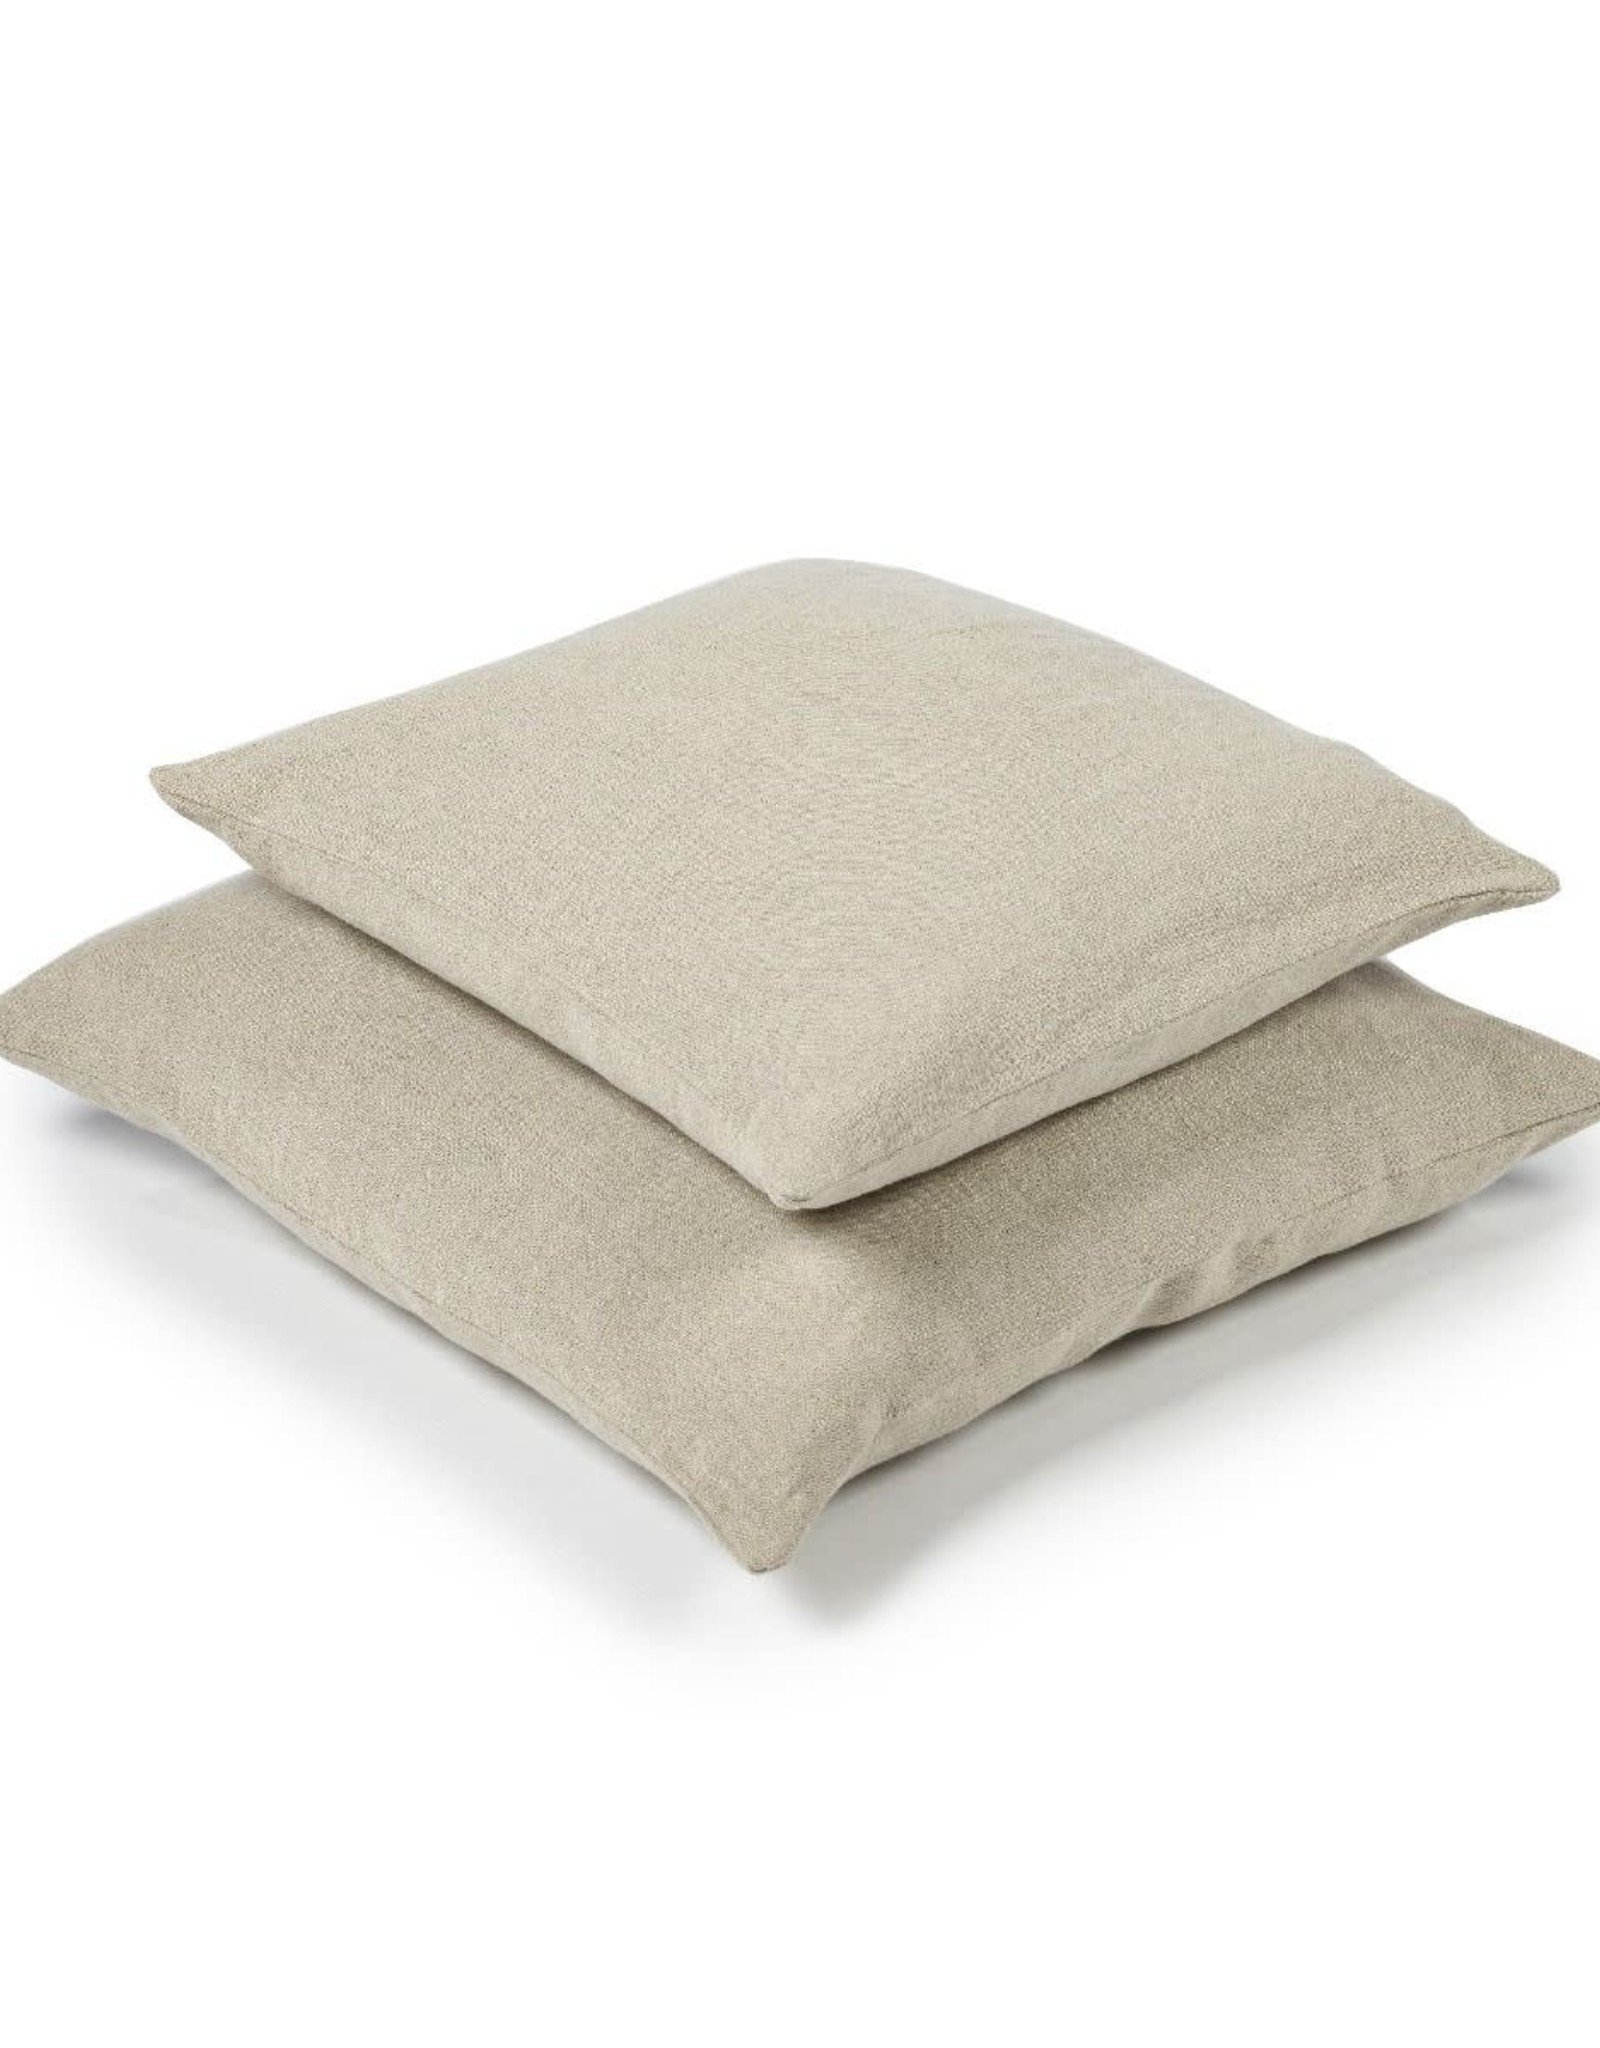 LIBECO LAGAE Pillow Hudson Flax 25x25